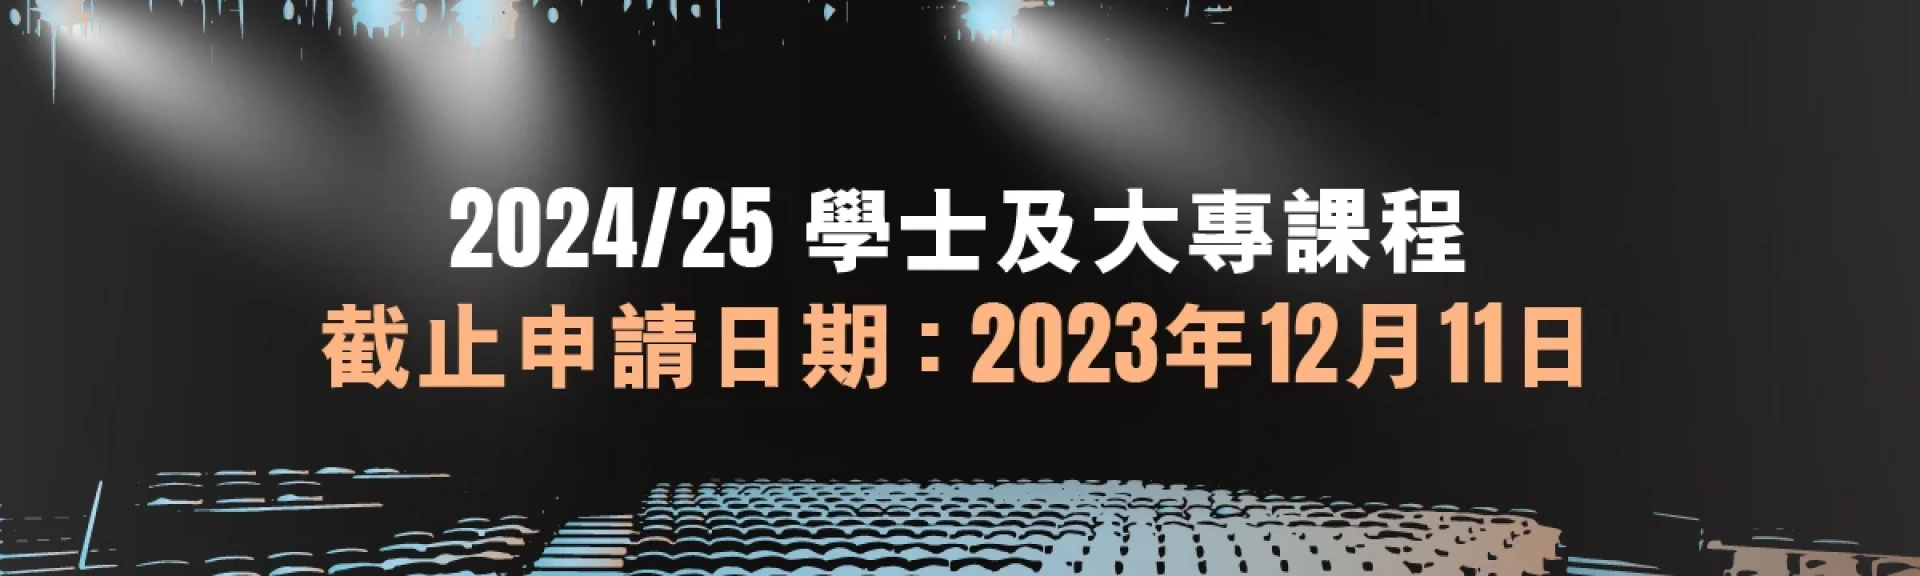 2024-25學士及大專課程將於2023年12月11日截止報名